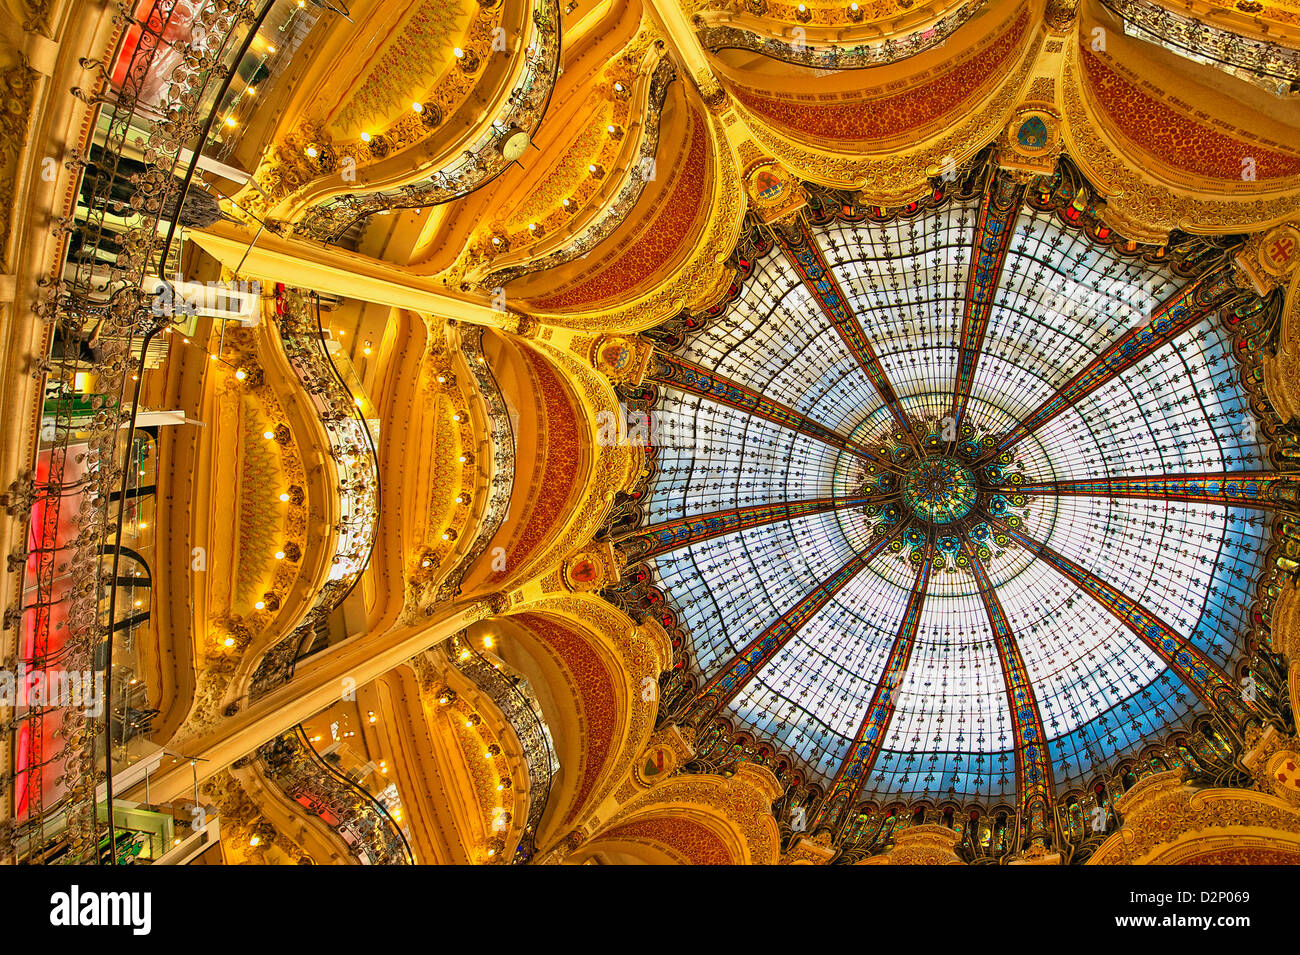 La cúpula de vidrieras de Galeries Lafayette, un gran opulento histórico art nouveau y grandes almacenes en el centro de París. Foto de stock